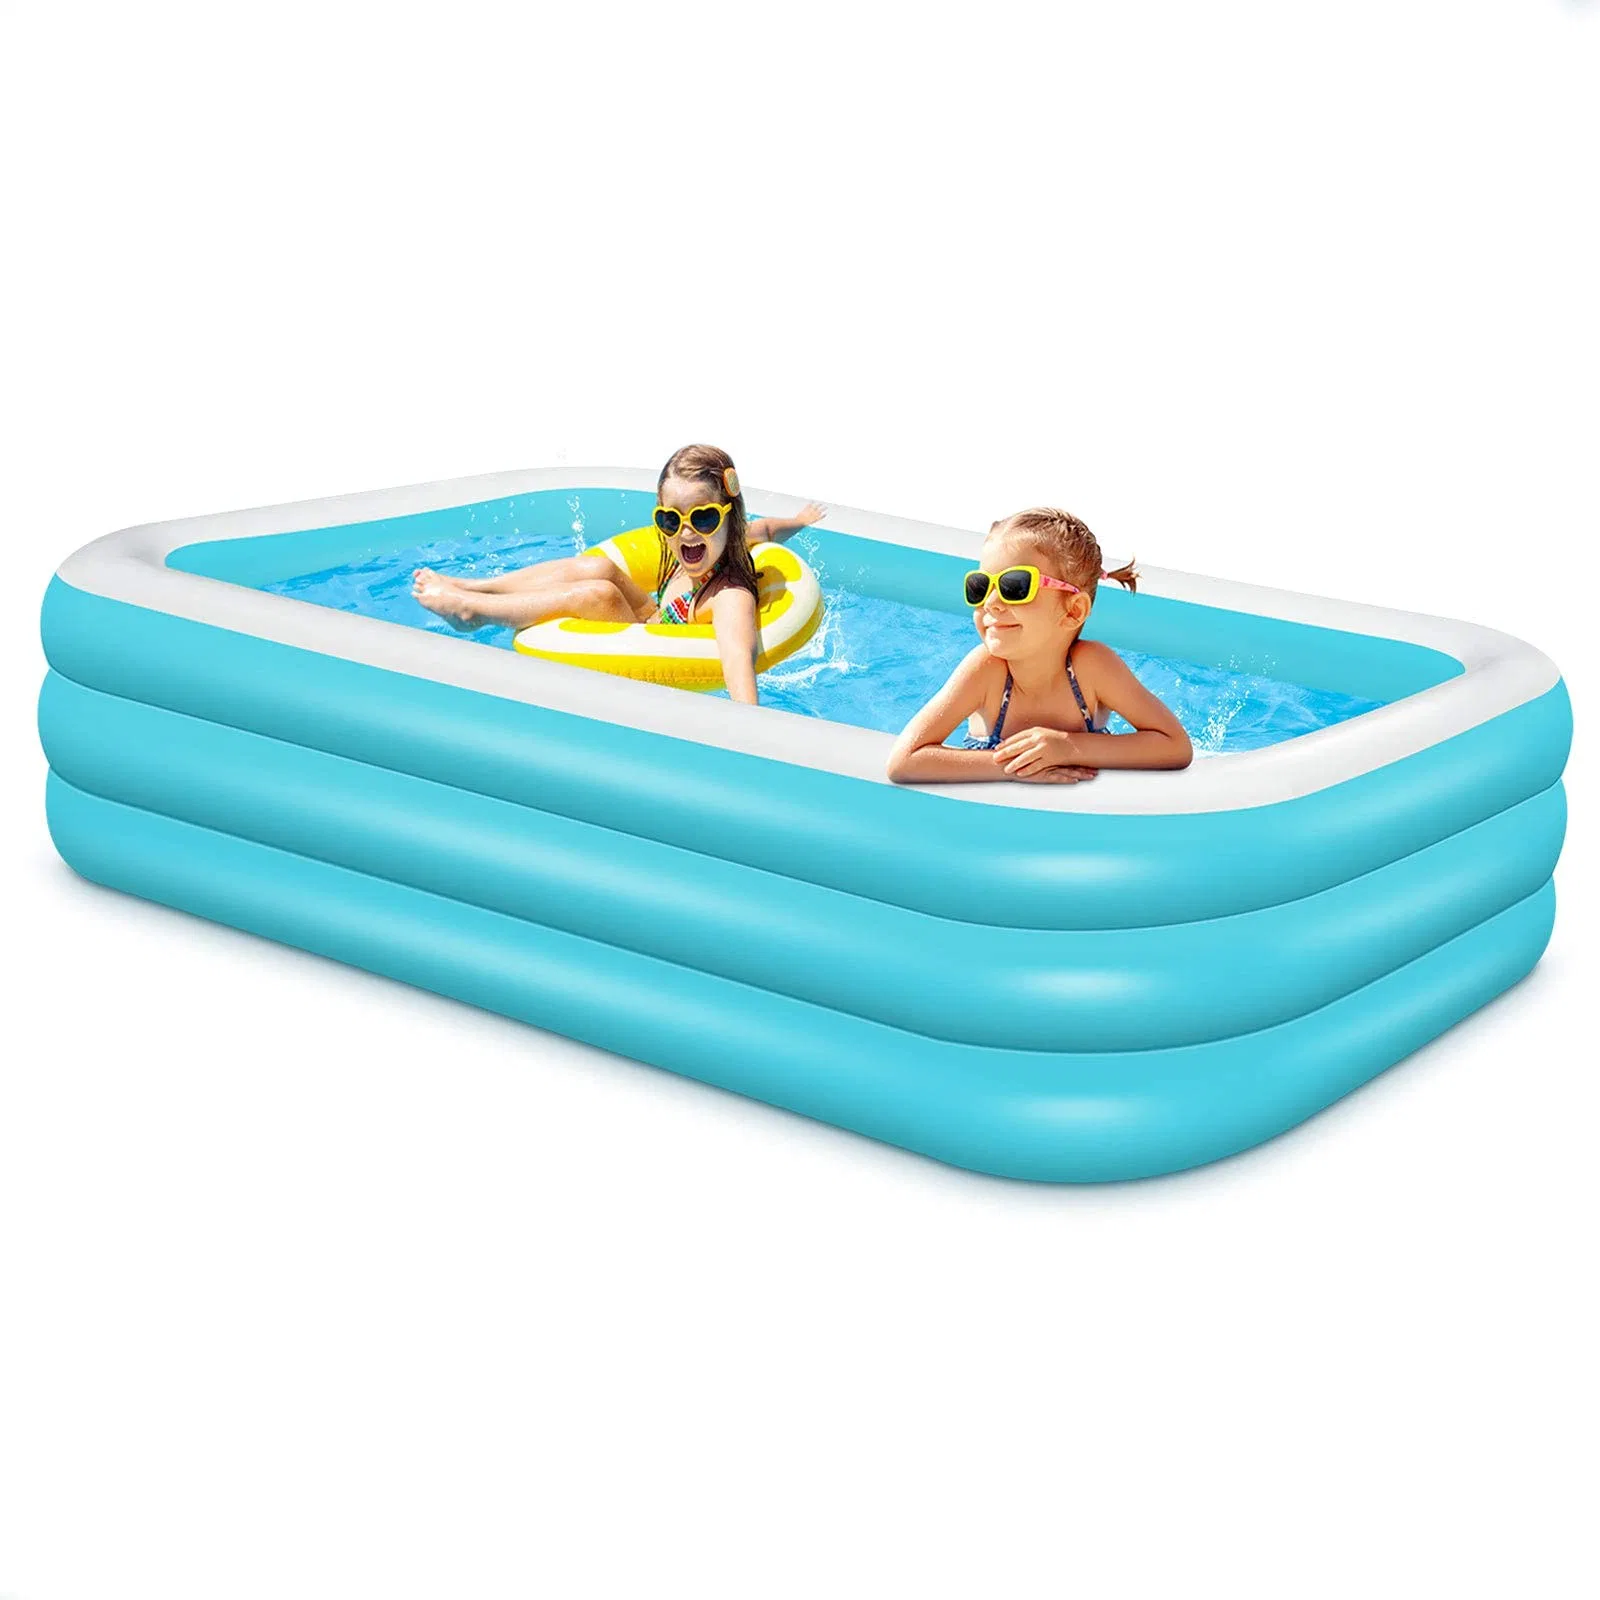 Einfach zu assamble rechteckige Aufblasbare Pool für Kinder